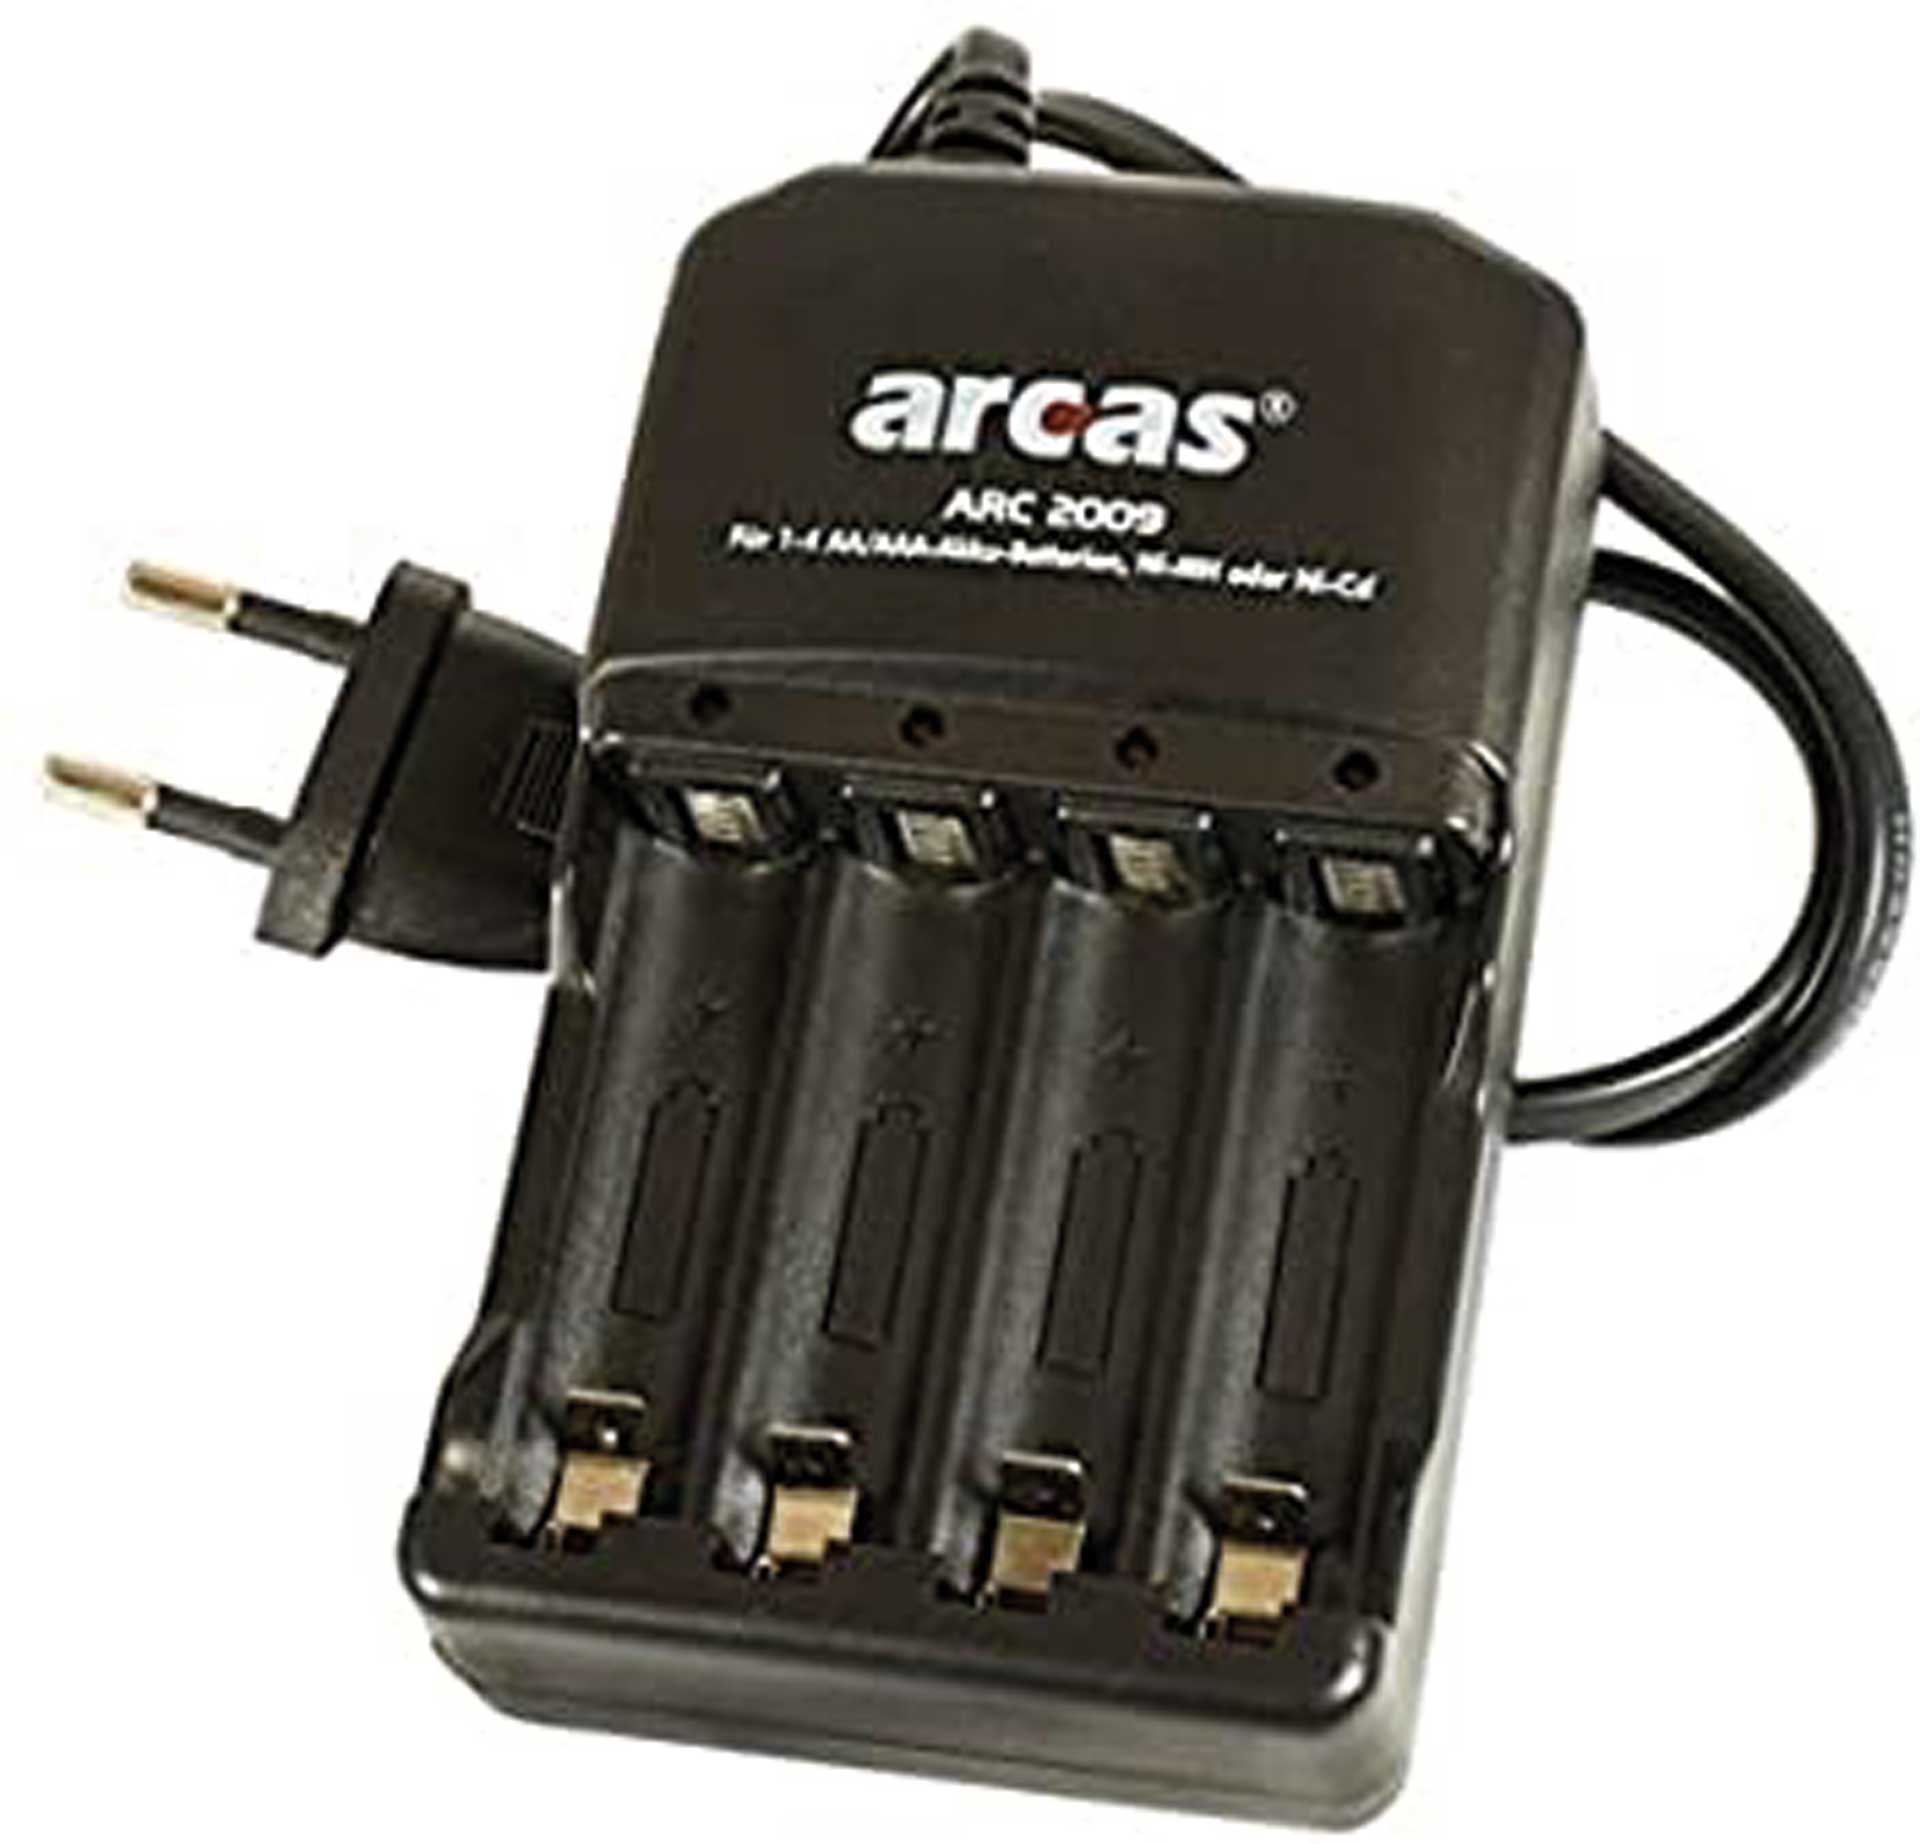 MODELLBAU LINDINGER Chargeur de piles rechargeables "ARC-2009" pour AA et AAA NIMH/NICD Einzelzellen